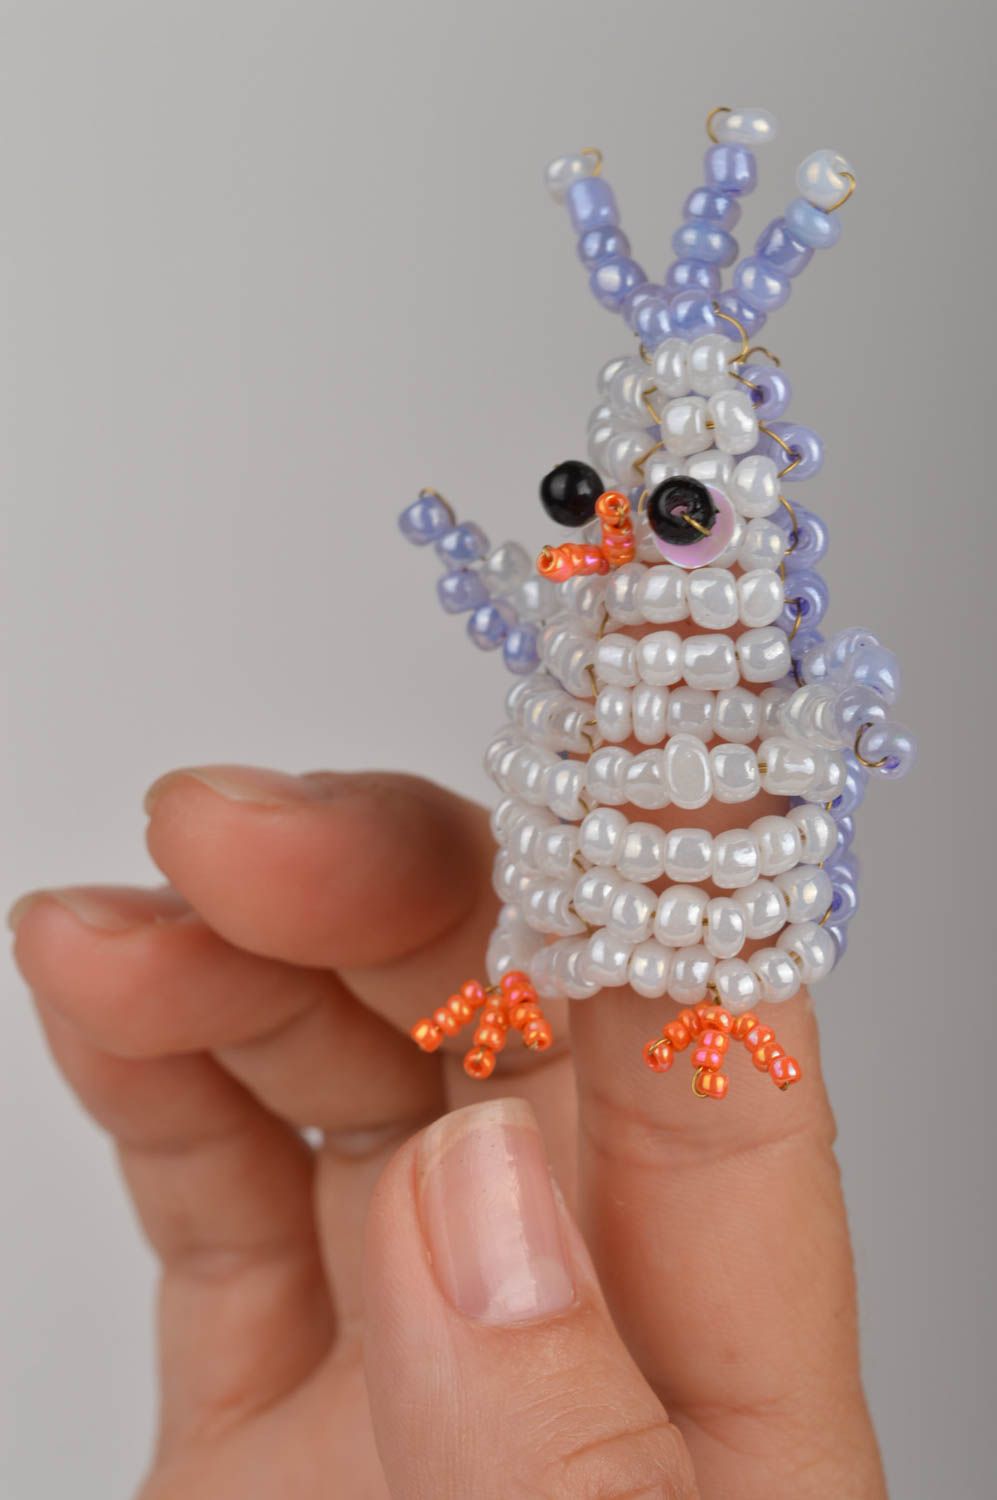 Пальчиковая игрушка пингвин ручной работы из бисера маленькая оригинальная фото 1